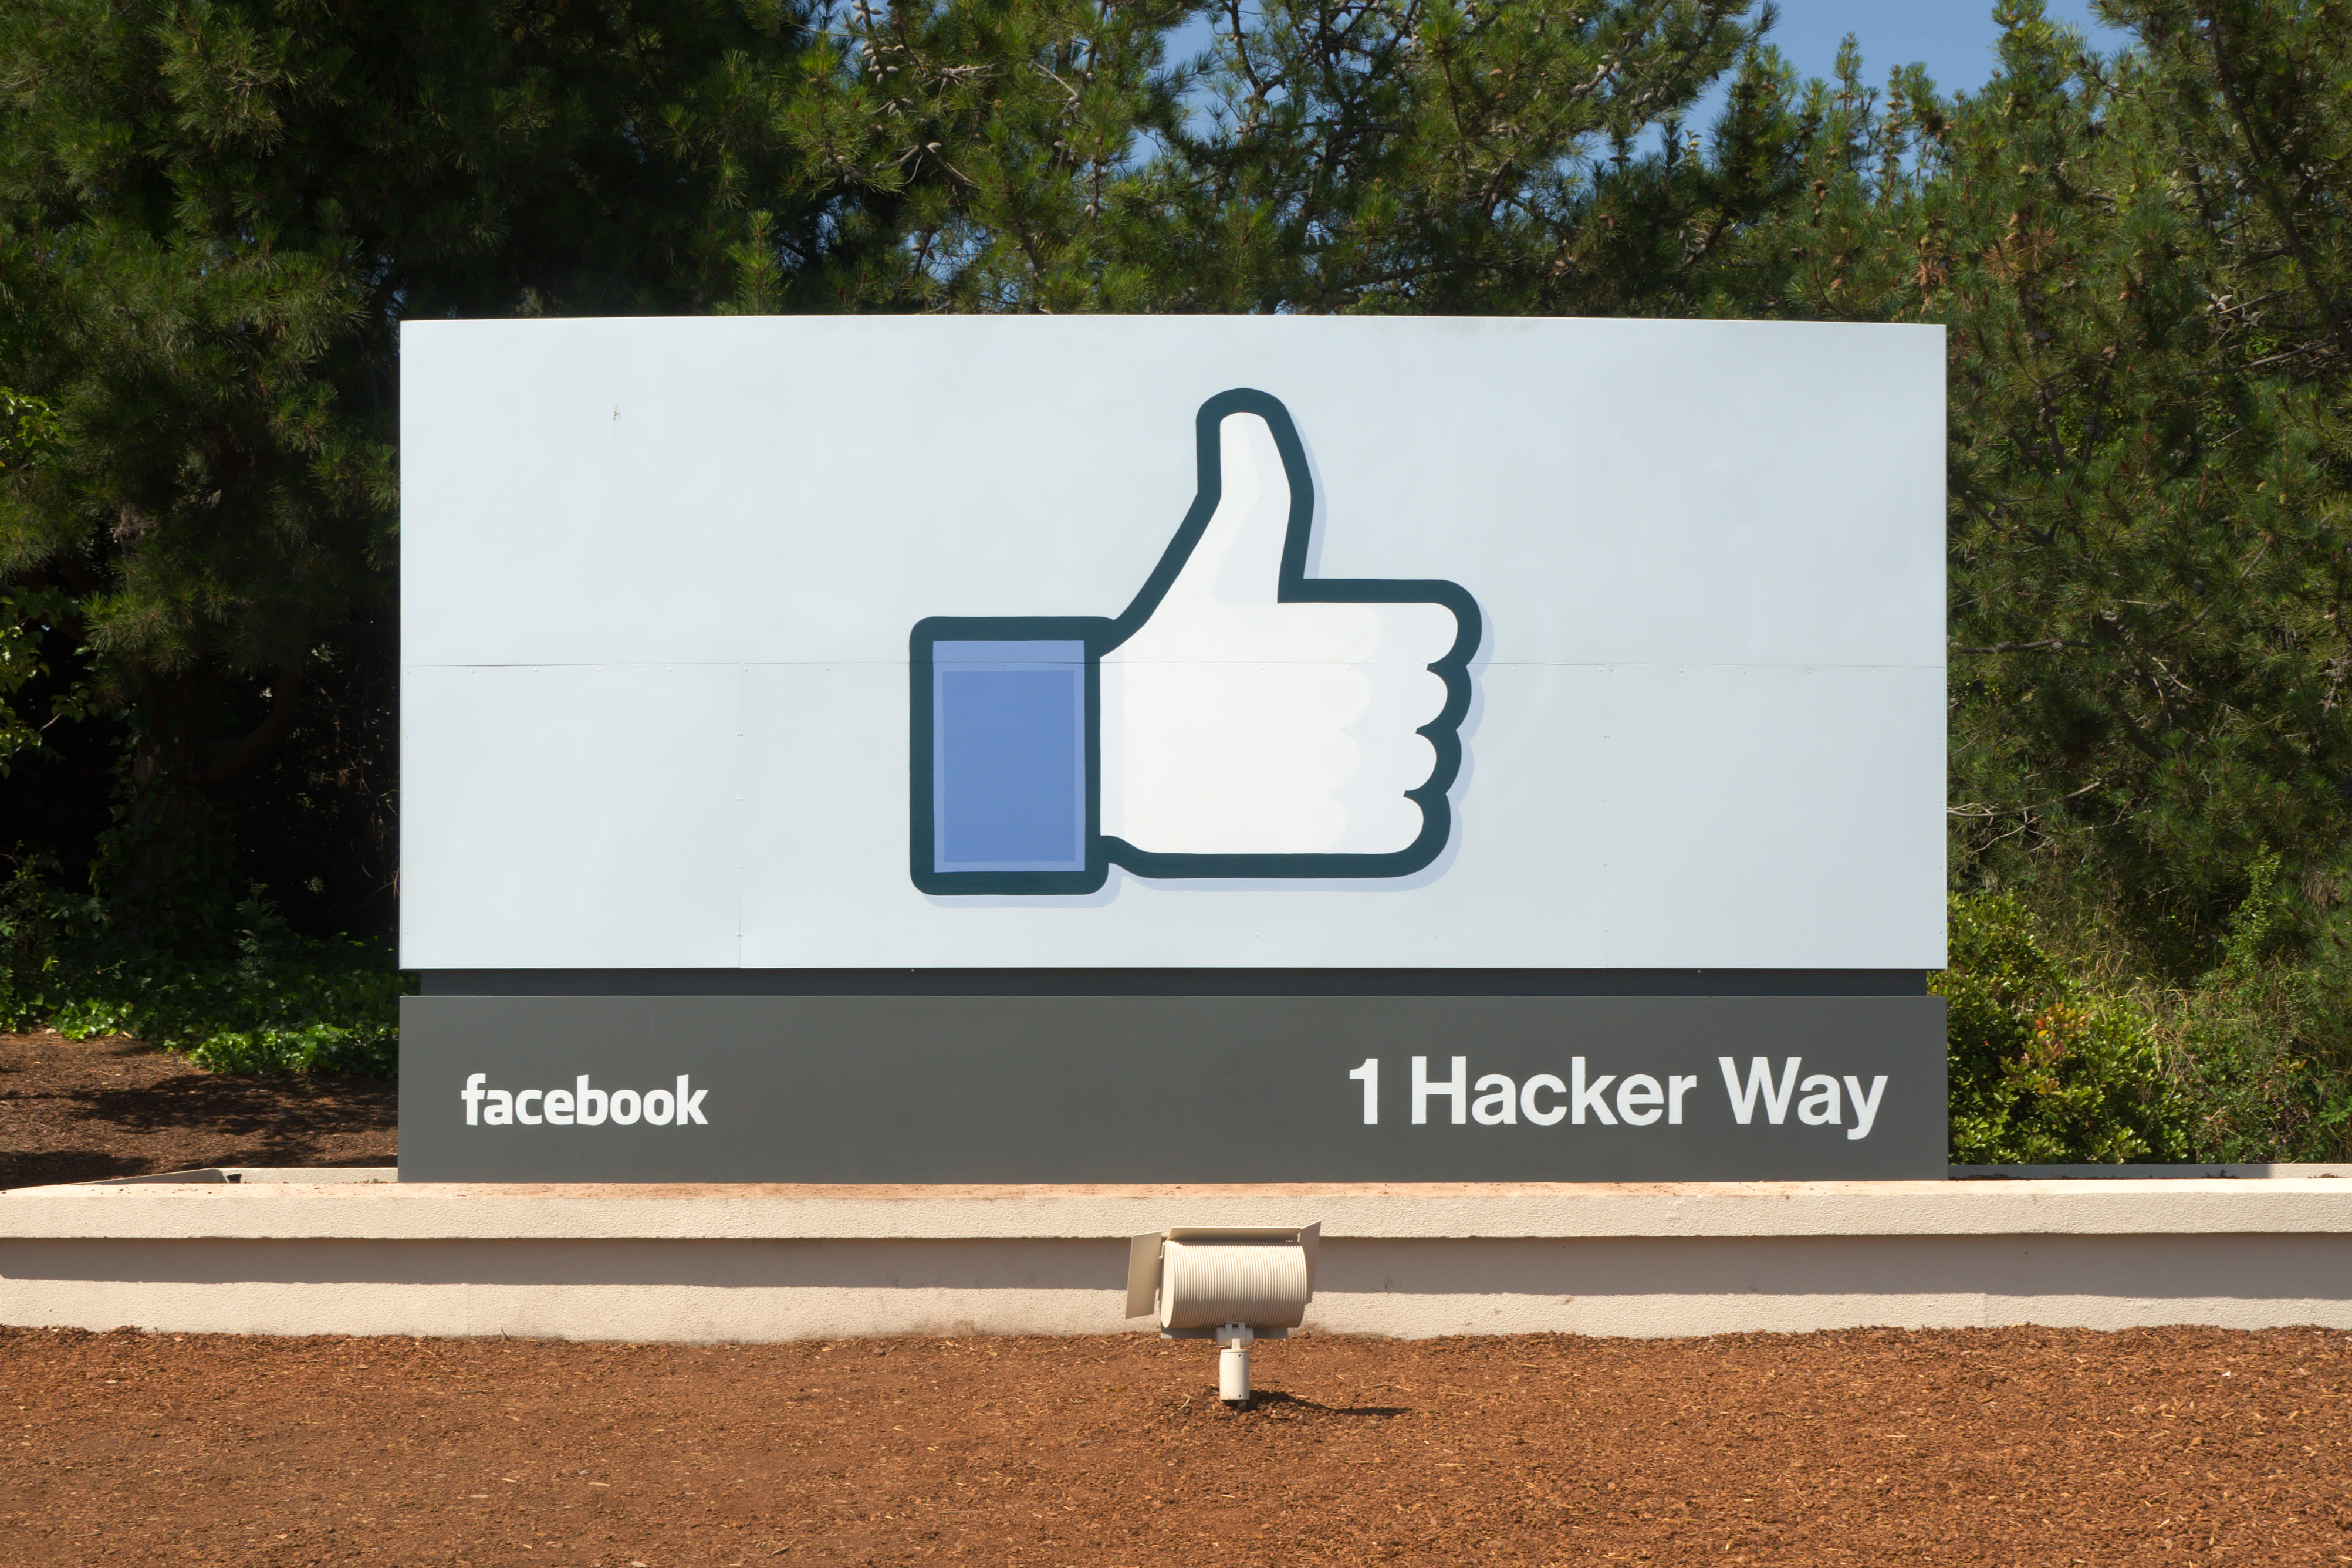 Facebook is headquartered in Menlo Park Calif